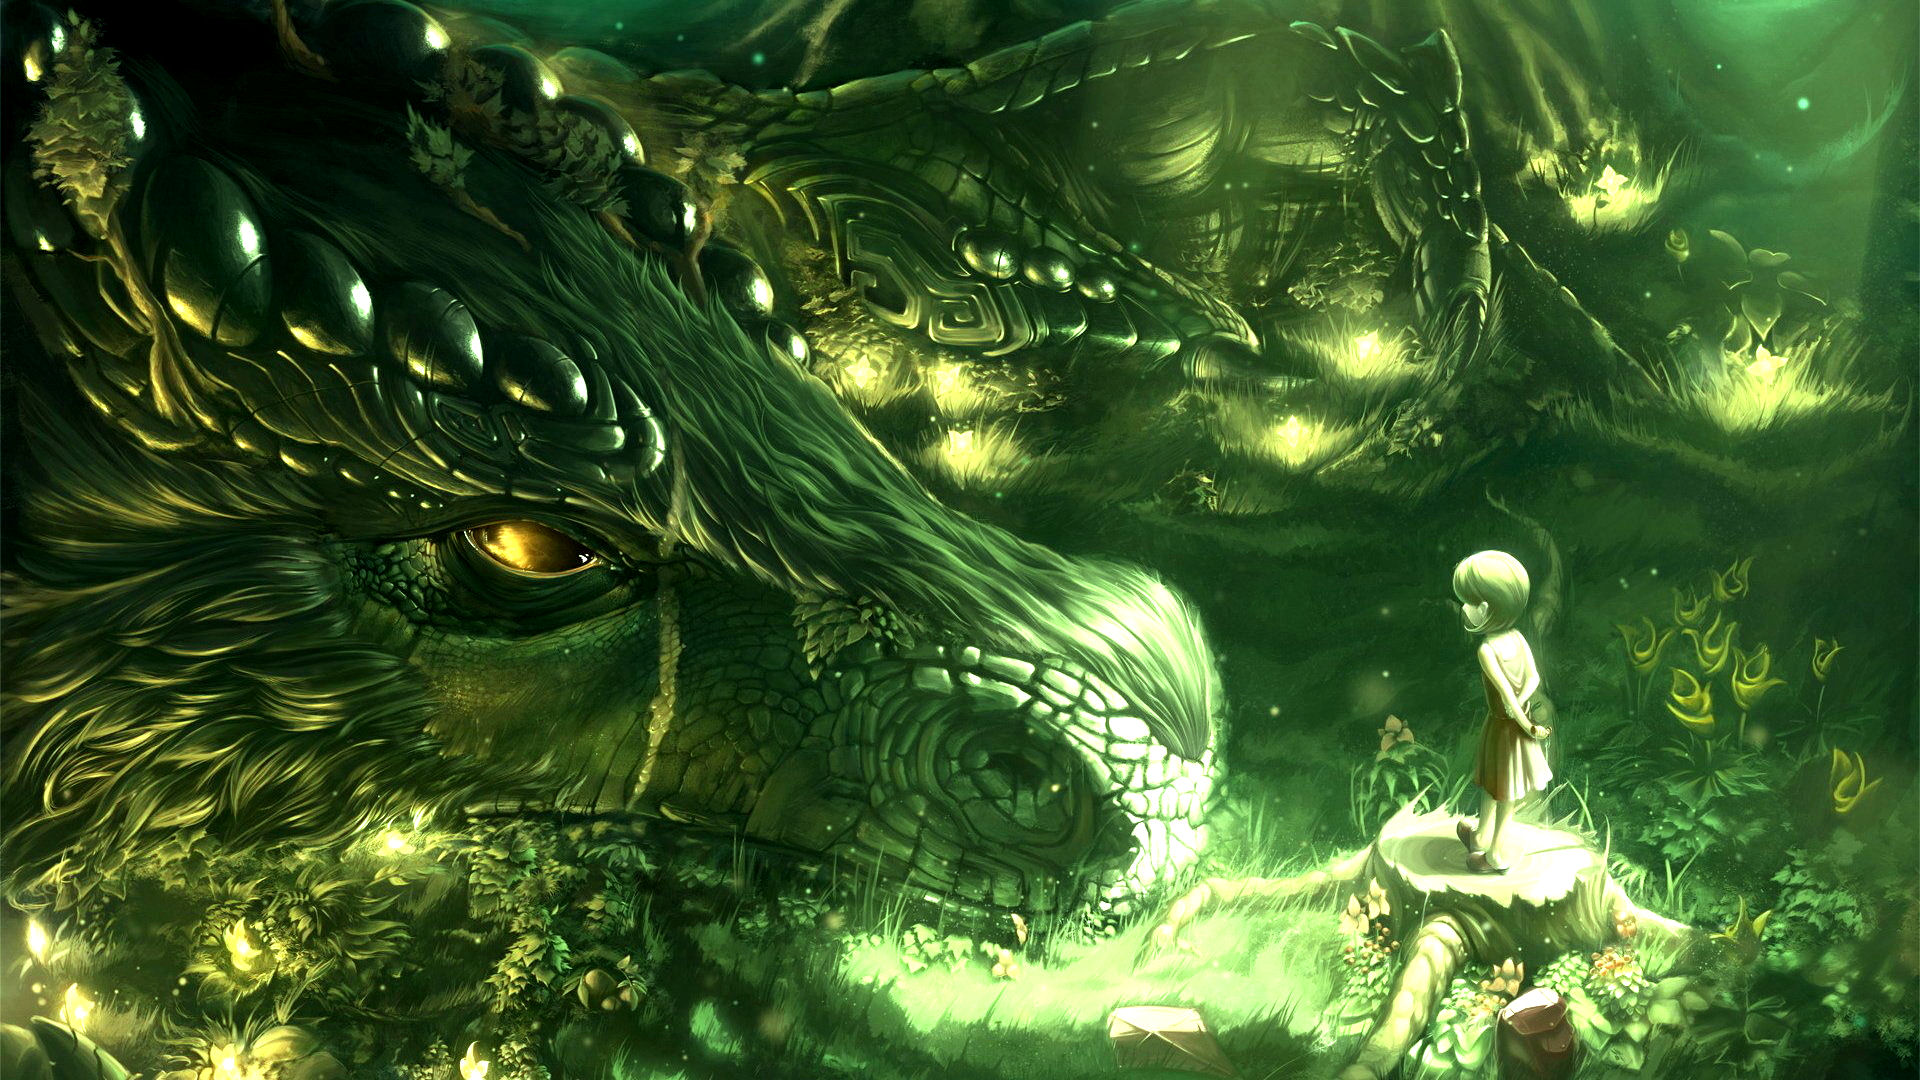 green-trees-dragons-monsters-forest-kids-fantasy-art-artwork-magical-fresh-new-hd-wallpaper.jpg